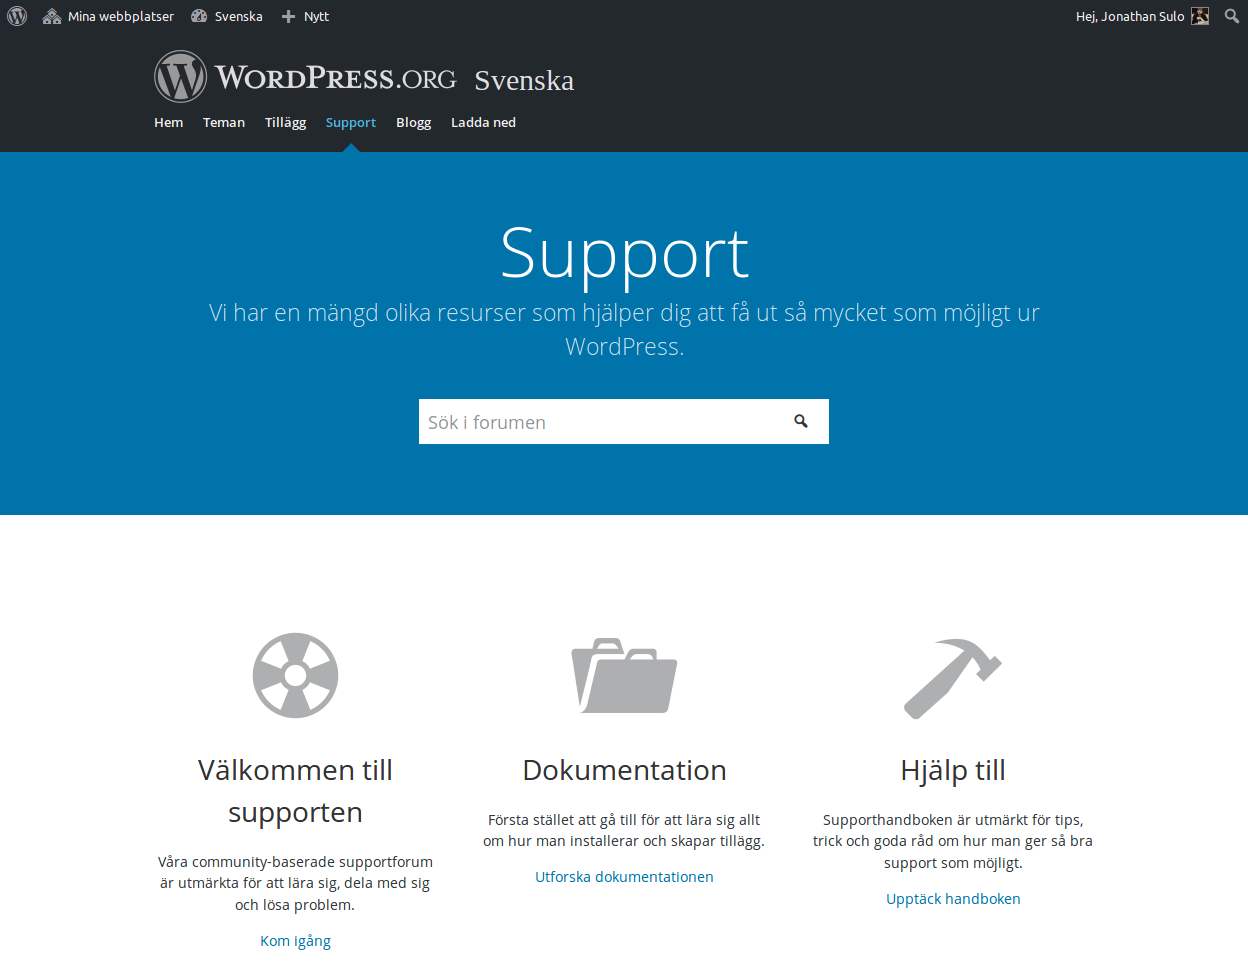 WordPress Sverige support och forum